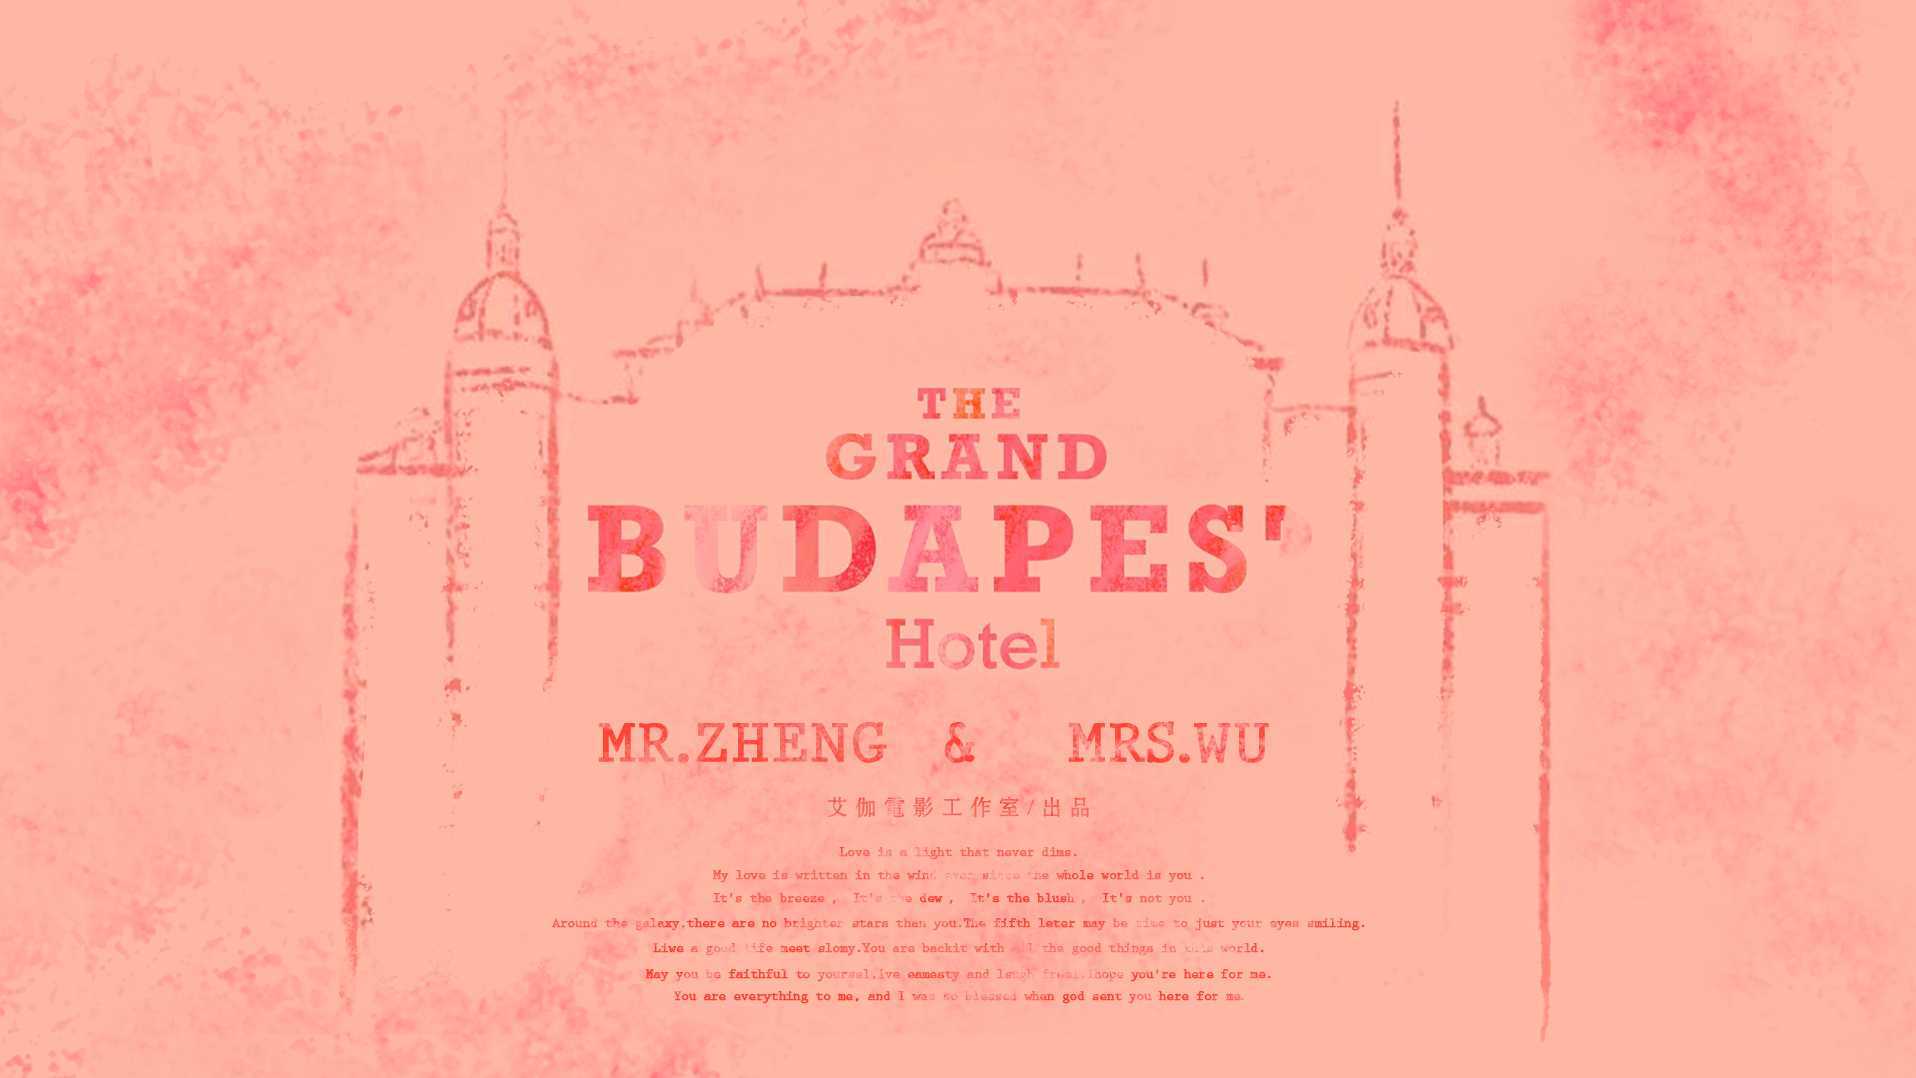 「布达佩斯大饭店」· 蓝堡婚礼电影  审核版